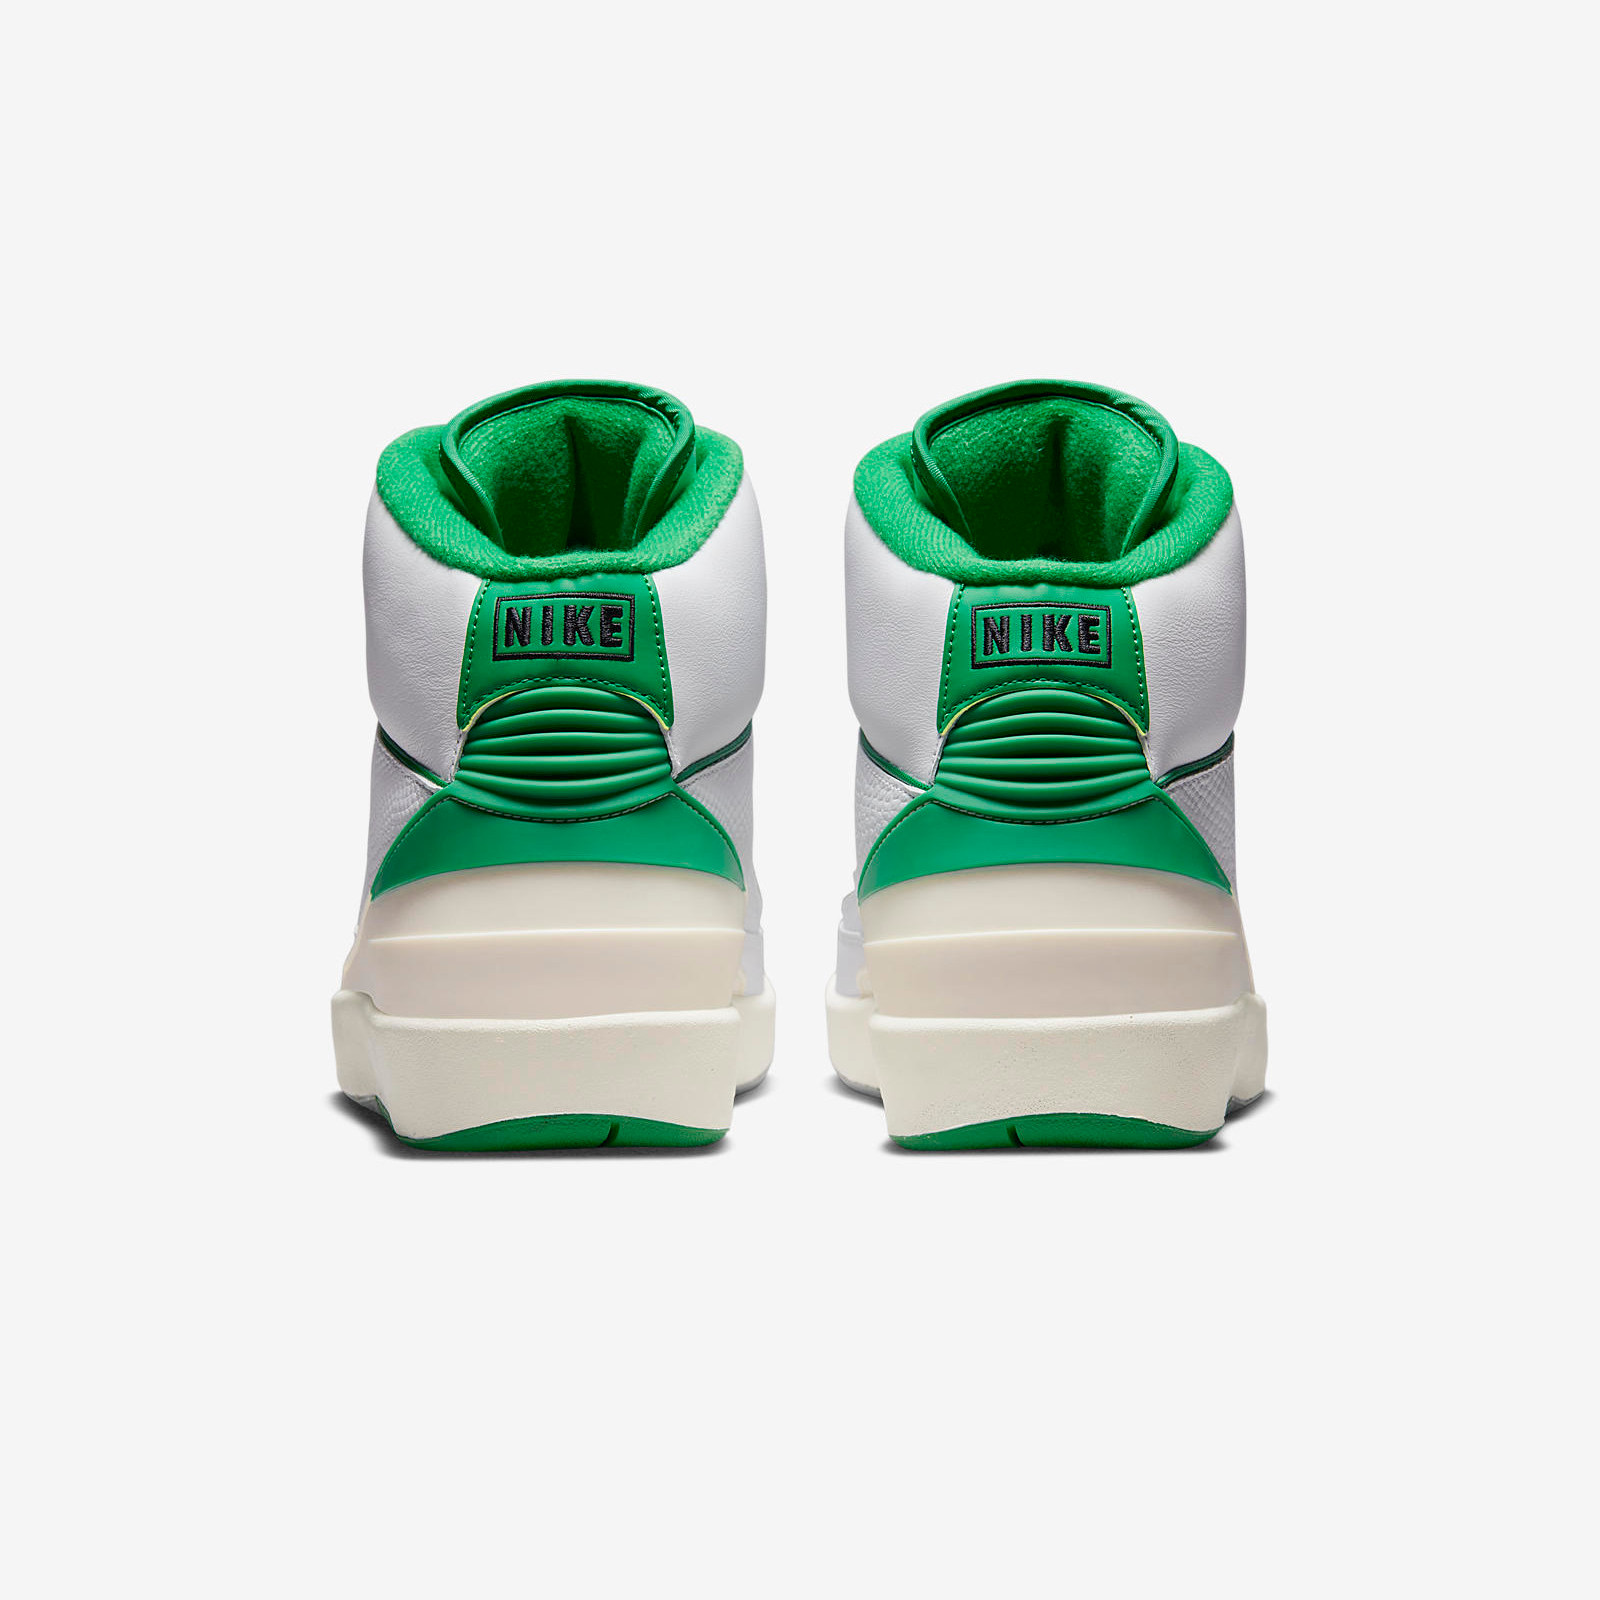 Air Jordan 2 Retro
« Lucky Green »